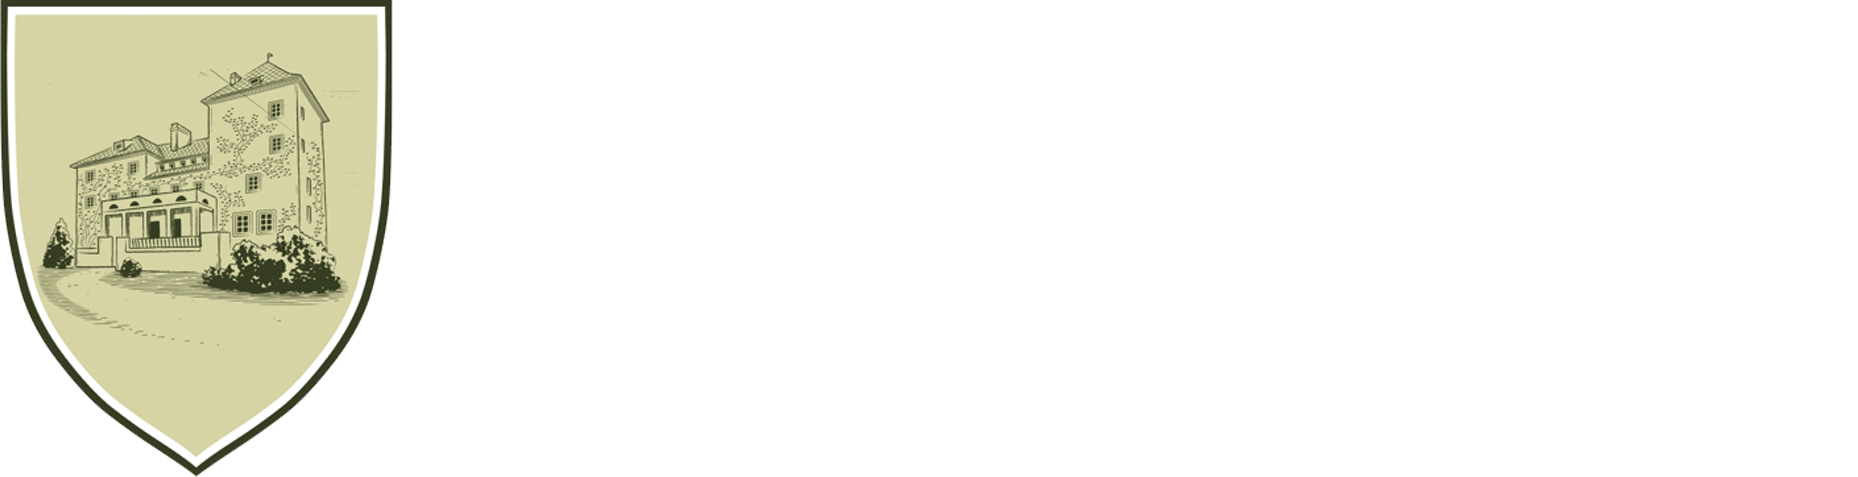 vetrov hotel logo